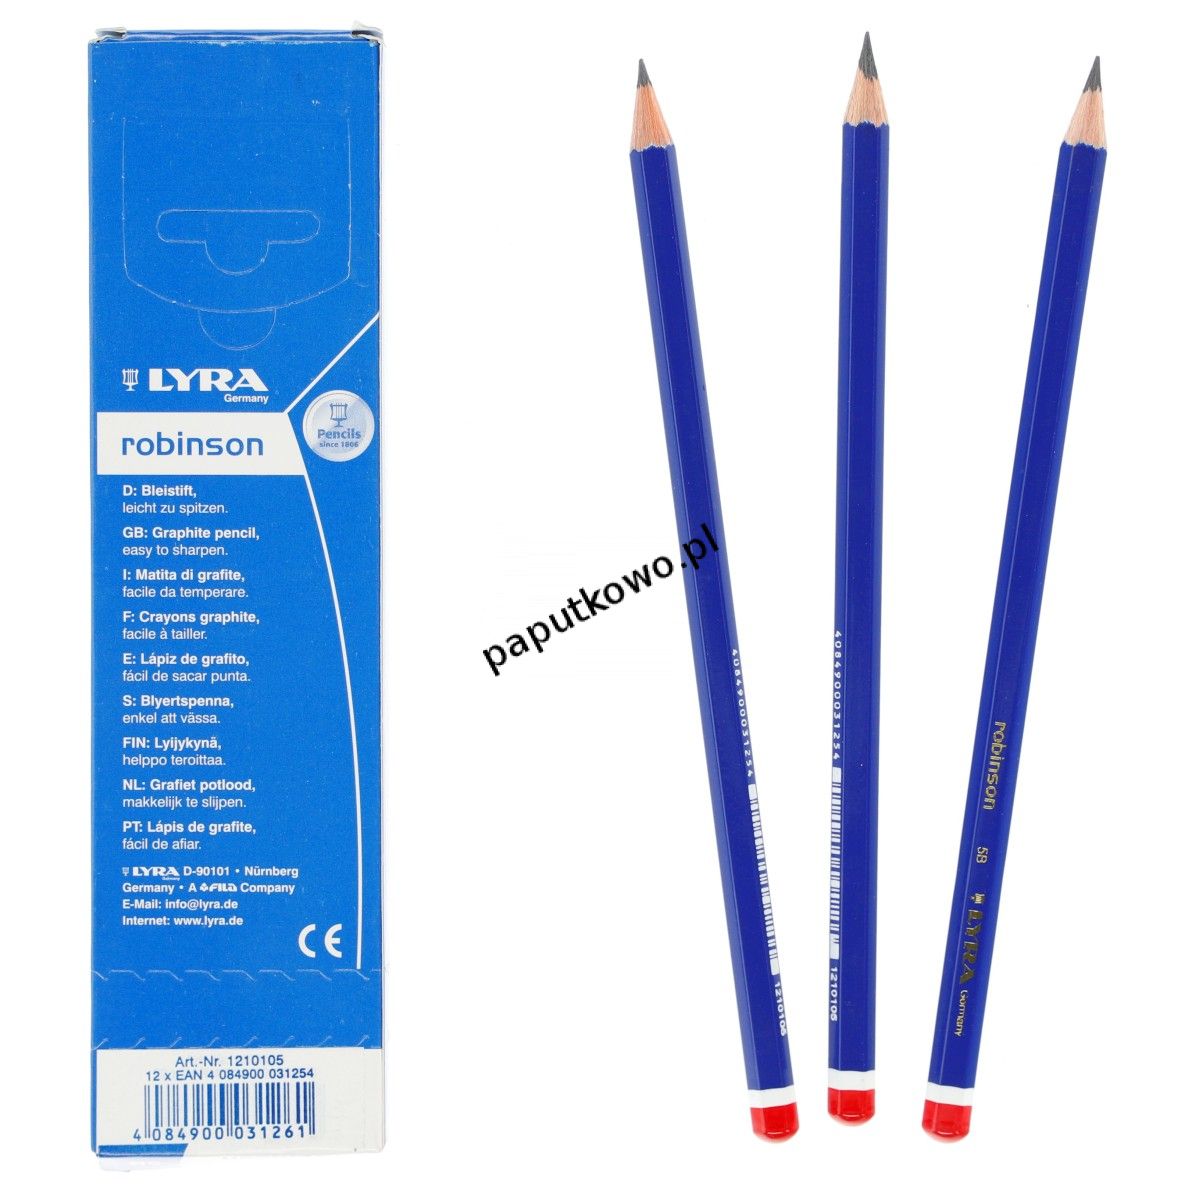 Ołówek techniczny Lyra Robinson (L1210105)